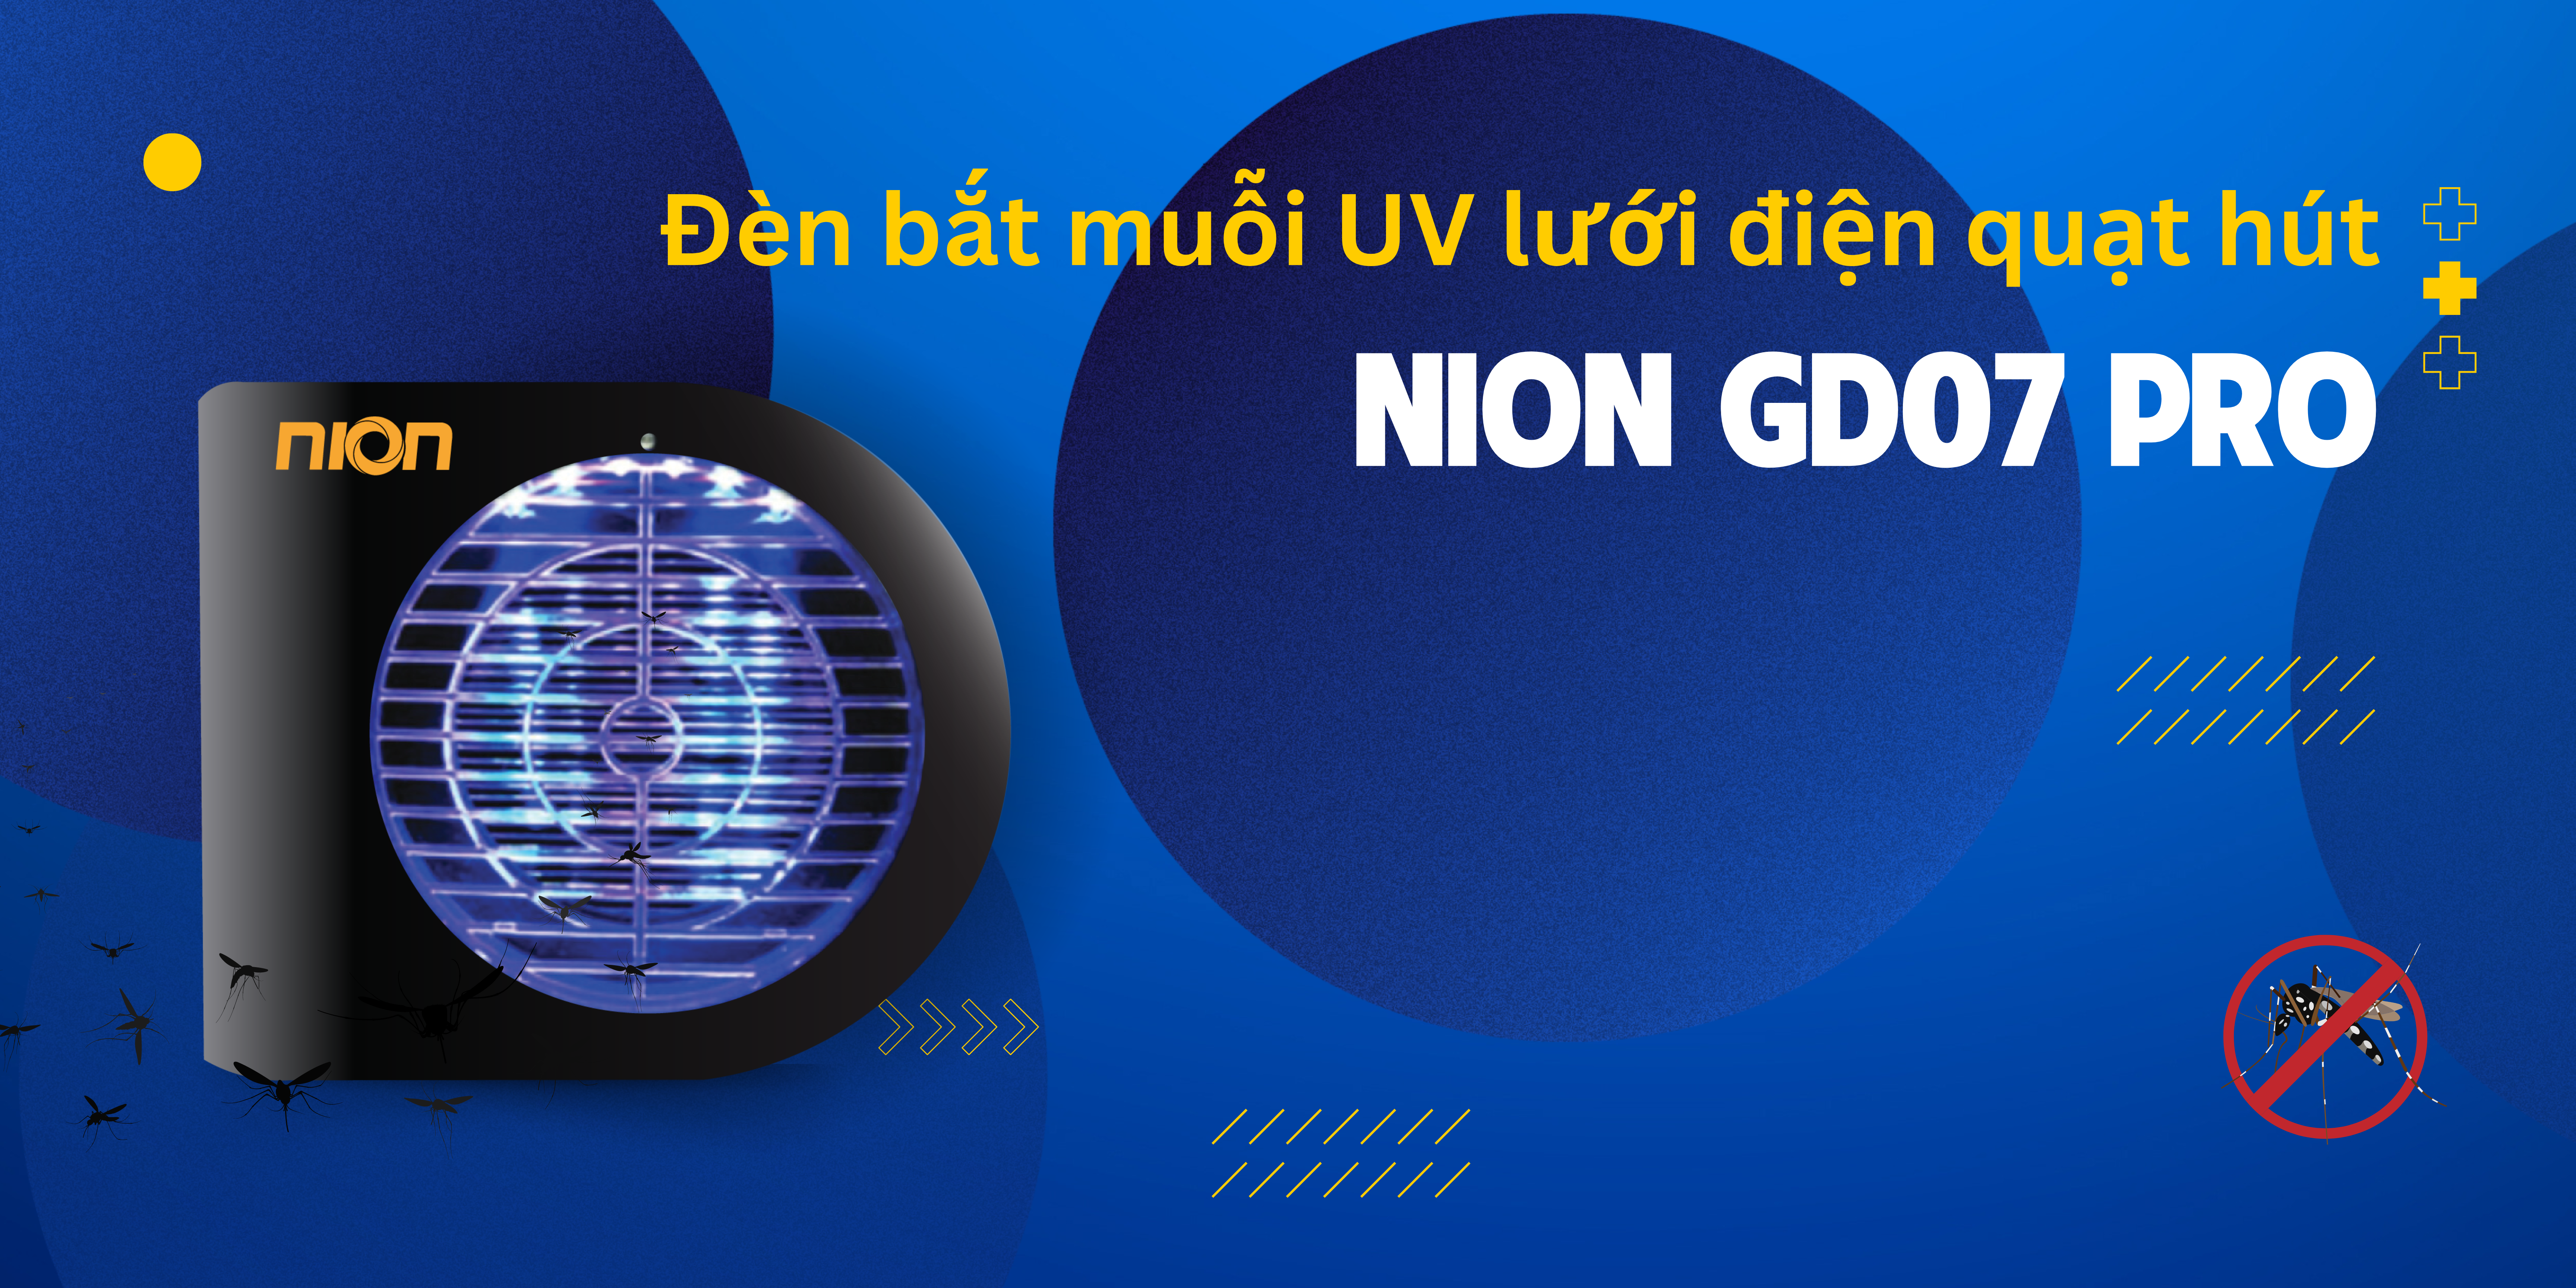 Đèn bắt muỗi UV lưới điện, quạt hút GD07 Pro